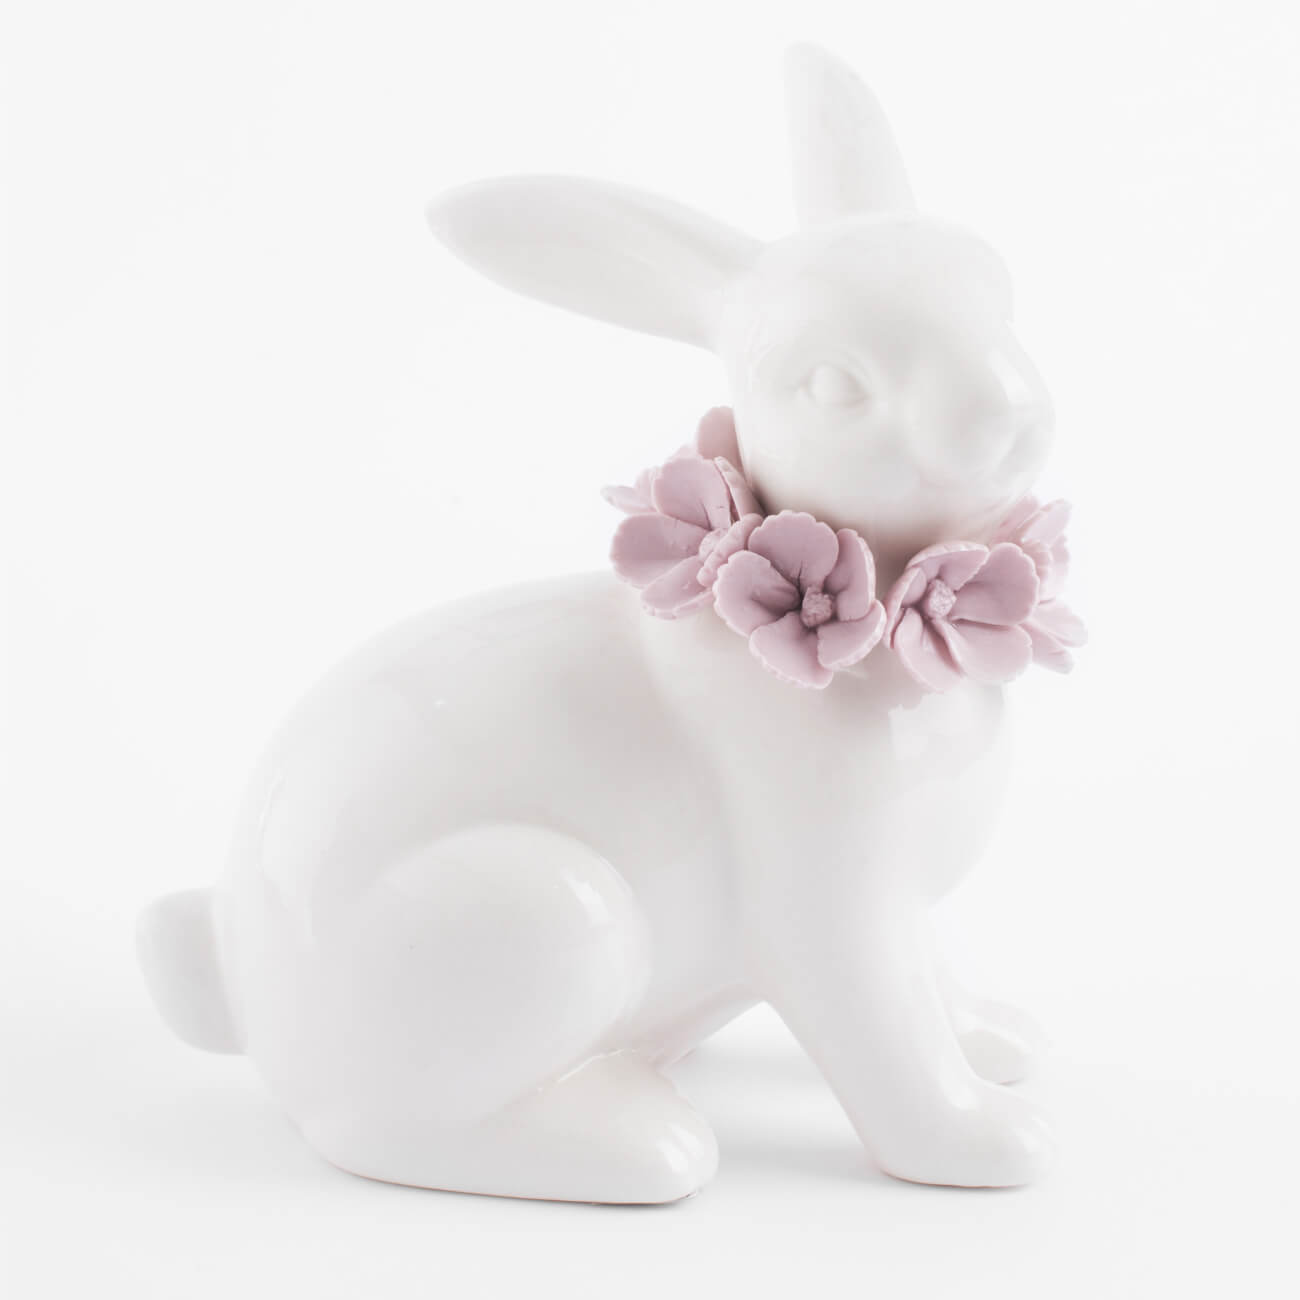 Статуэтка, 15 см, фарфор Porcelain, белая, Кролик в цветах, Pure Easter статуэтка 47 см петух